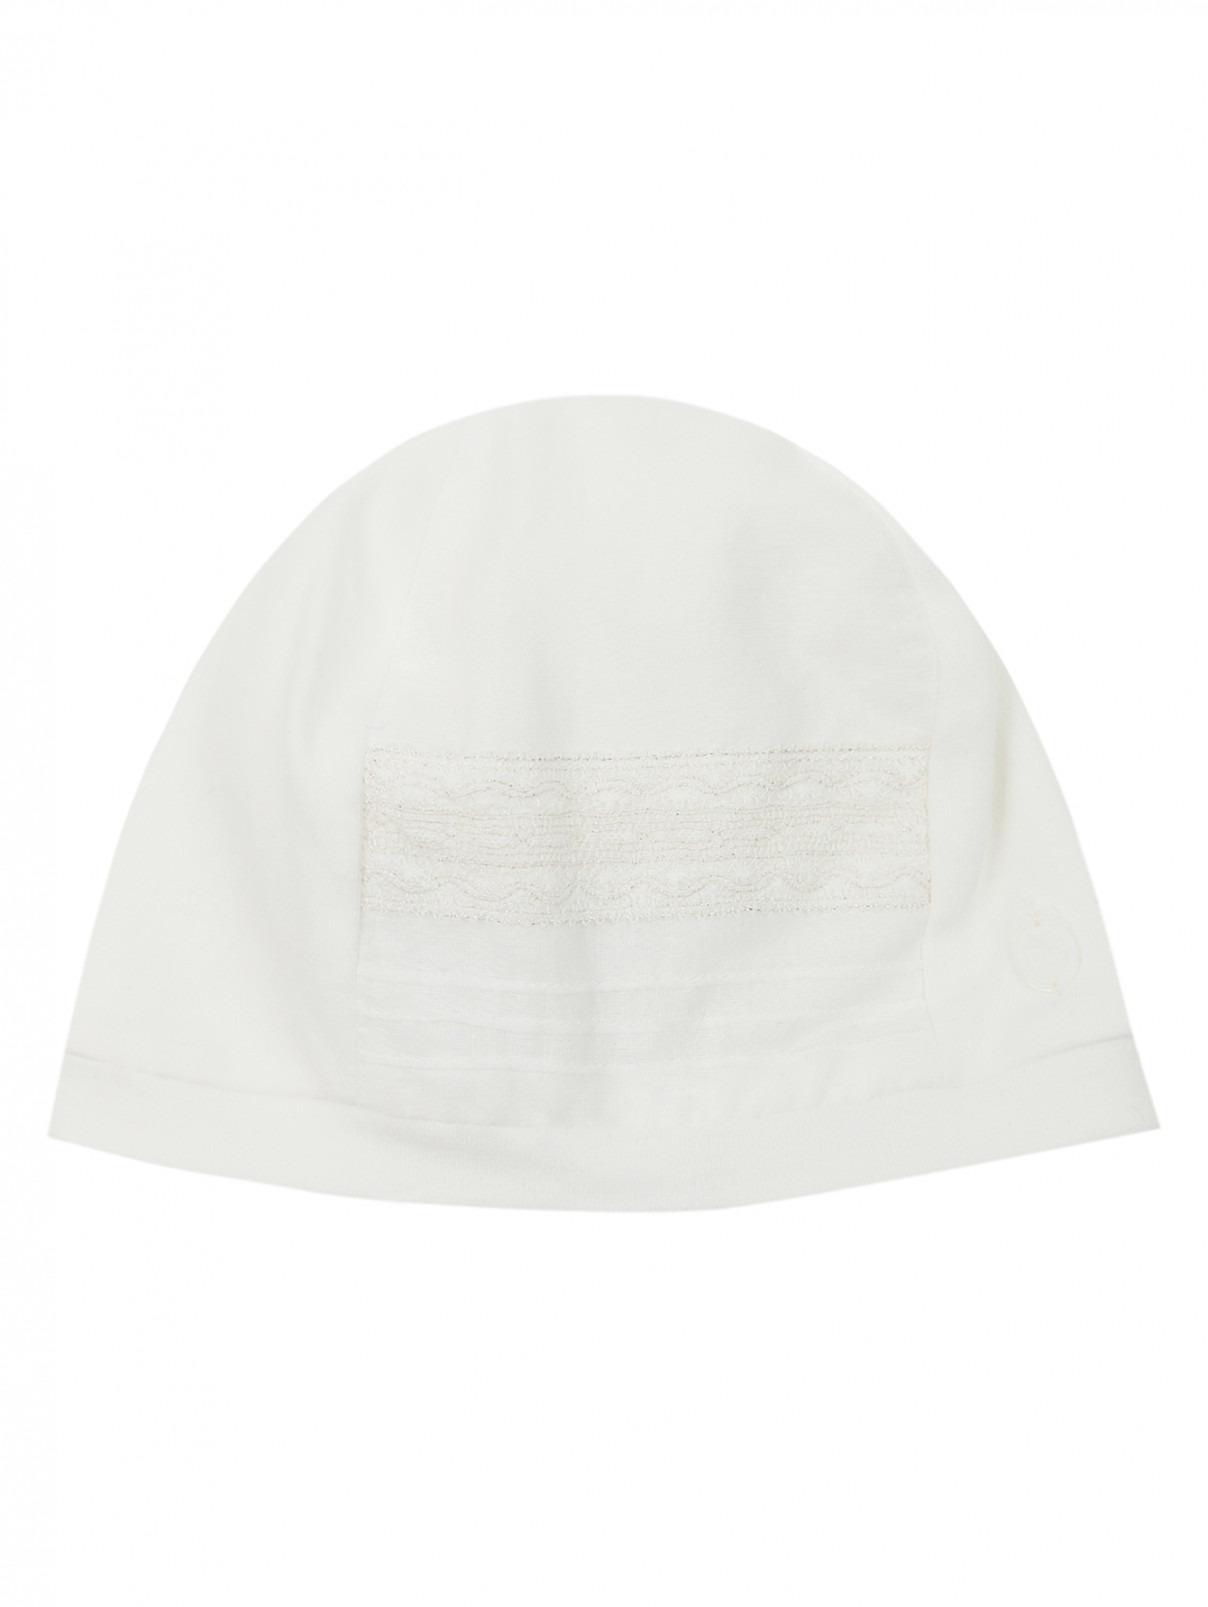 Хлопковая шапочка с кружевной вставкой Baby Dior  –  Общий вид  – Цвет:  Белый